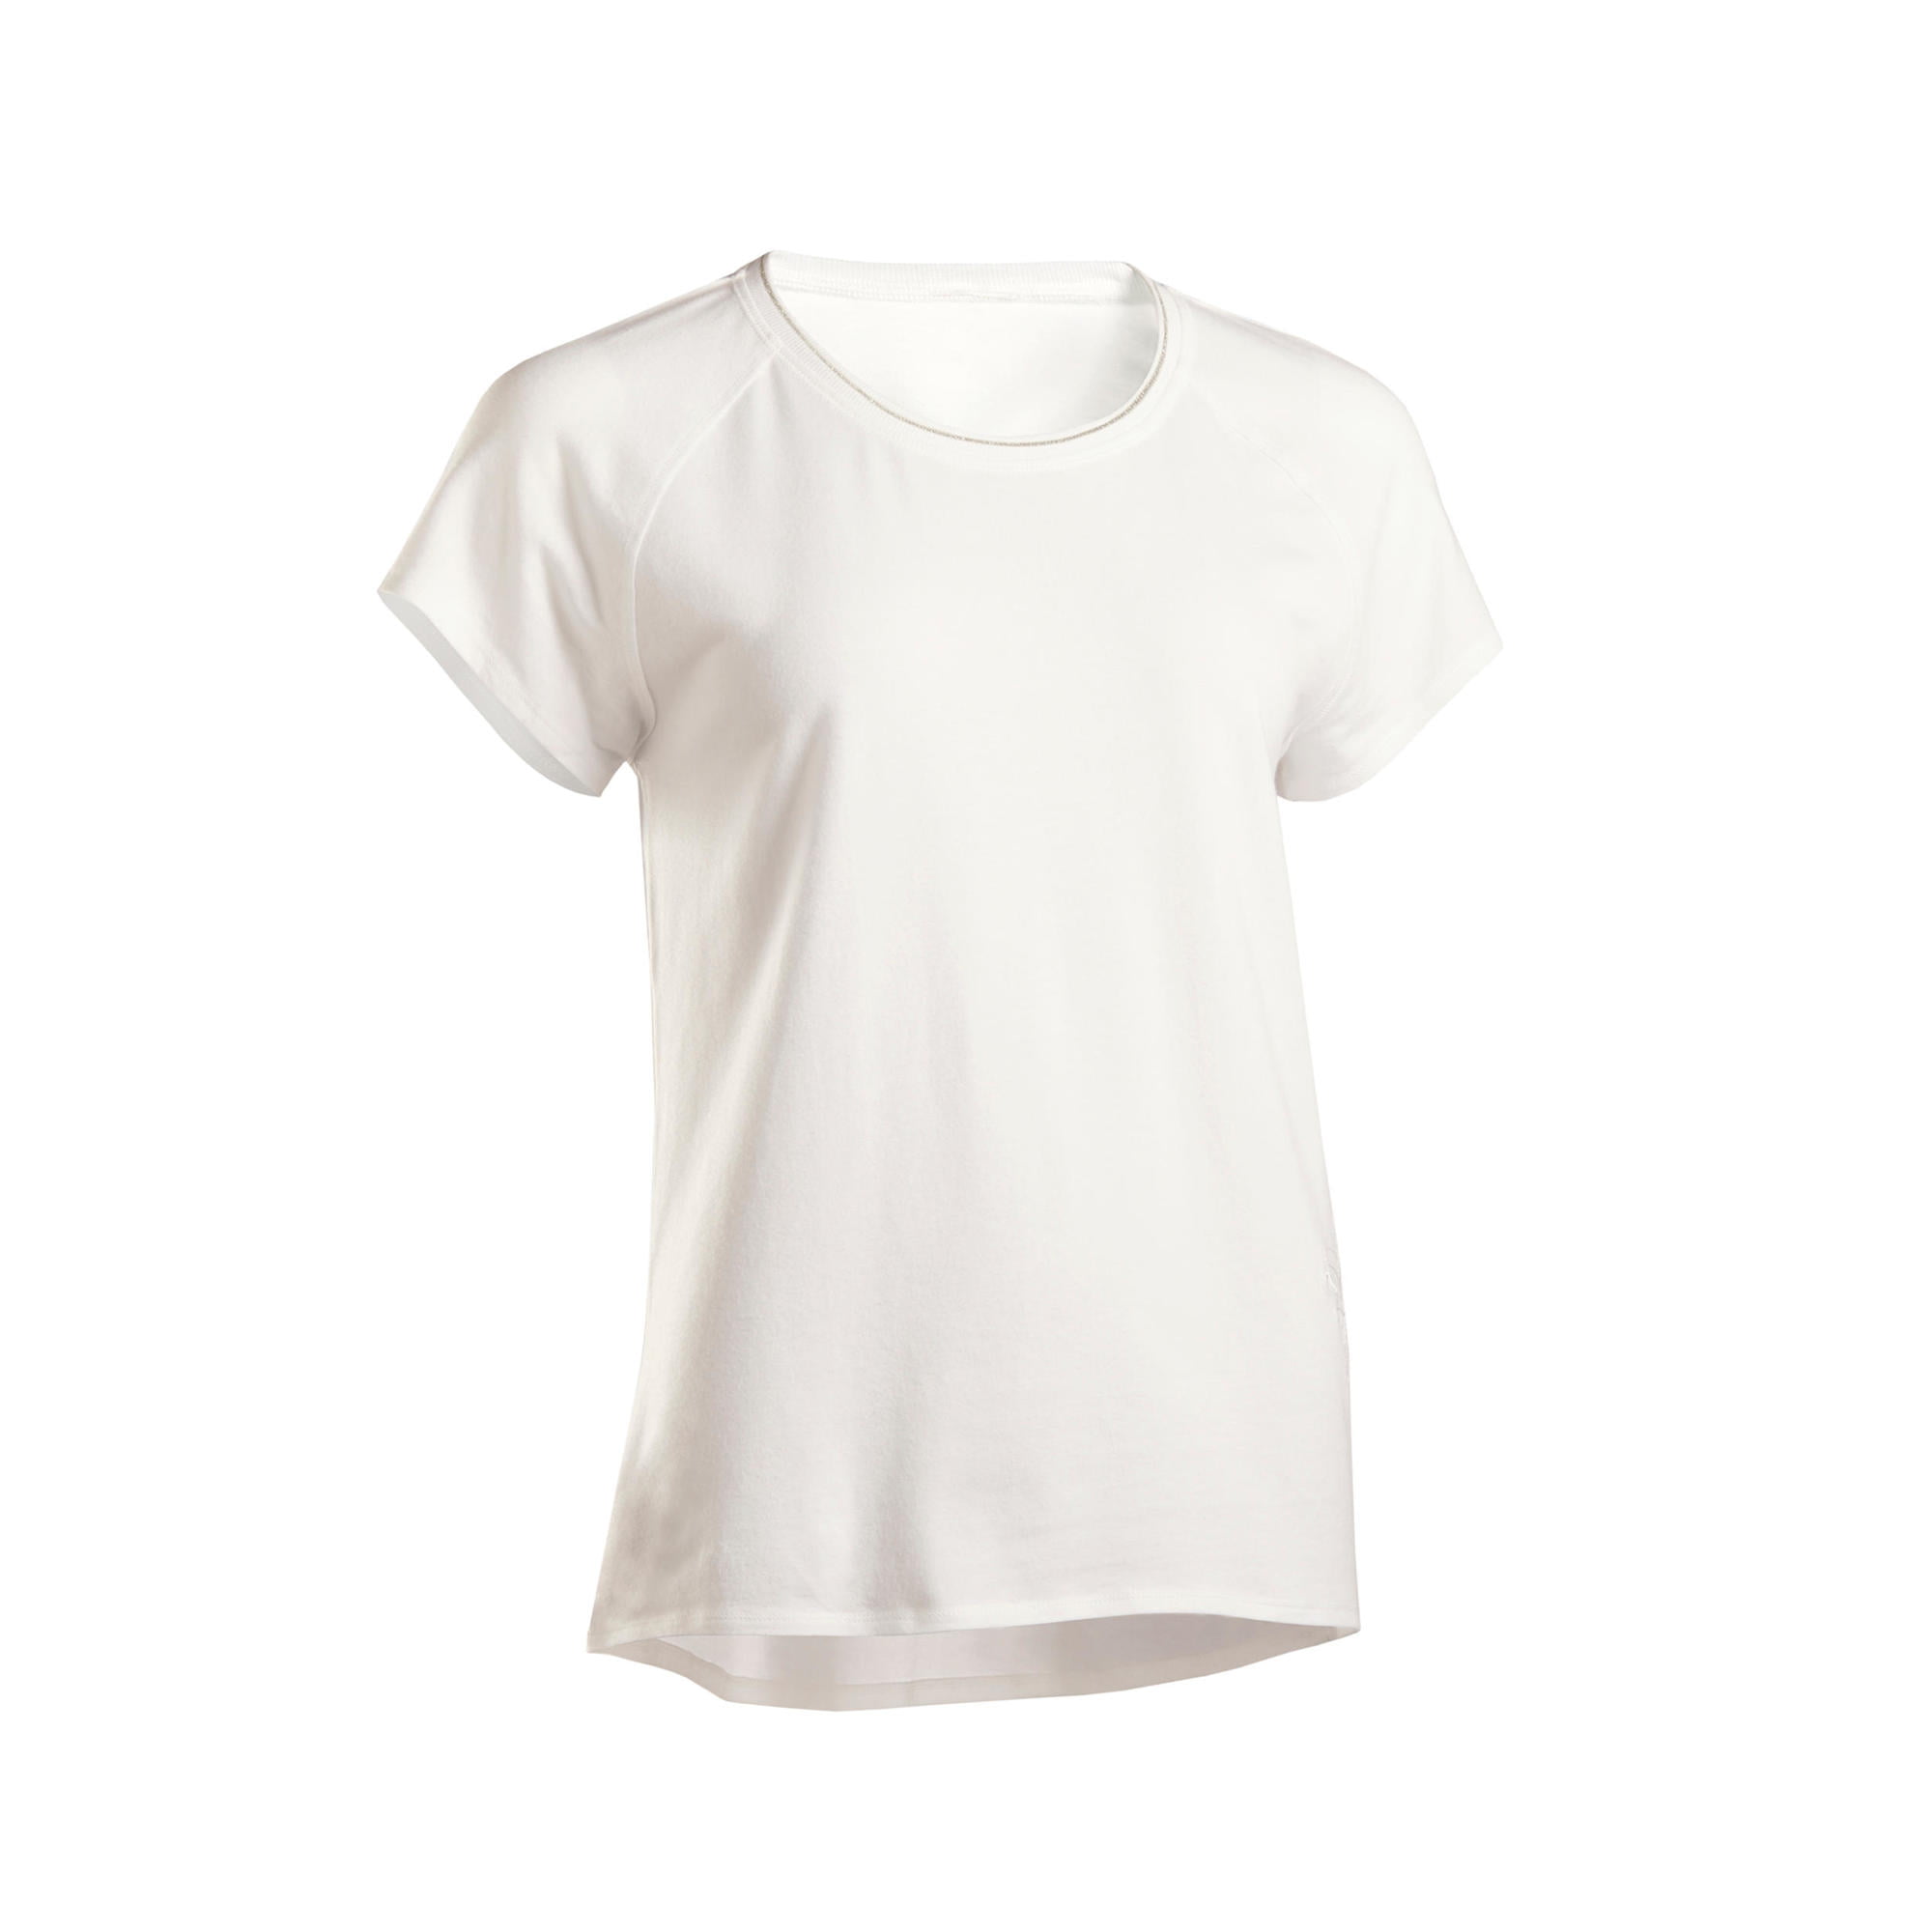 Domyos Organic Cotton Yoga T-Shirt 